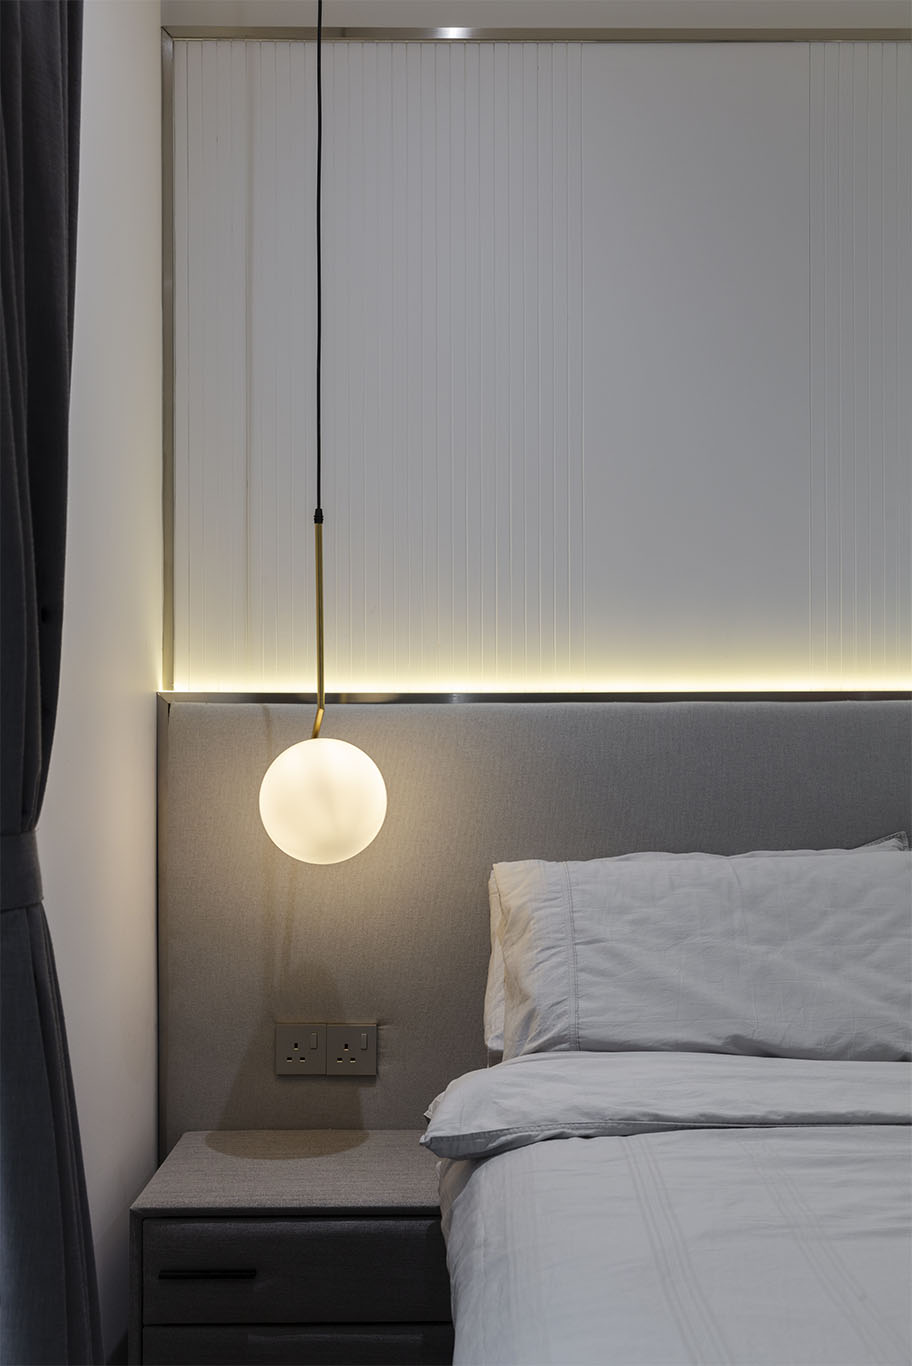 MIEUX La Famillie De Lee grey color bed frame with hidden light behind bed frame 2 mieux interior design